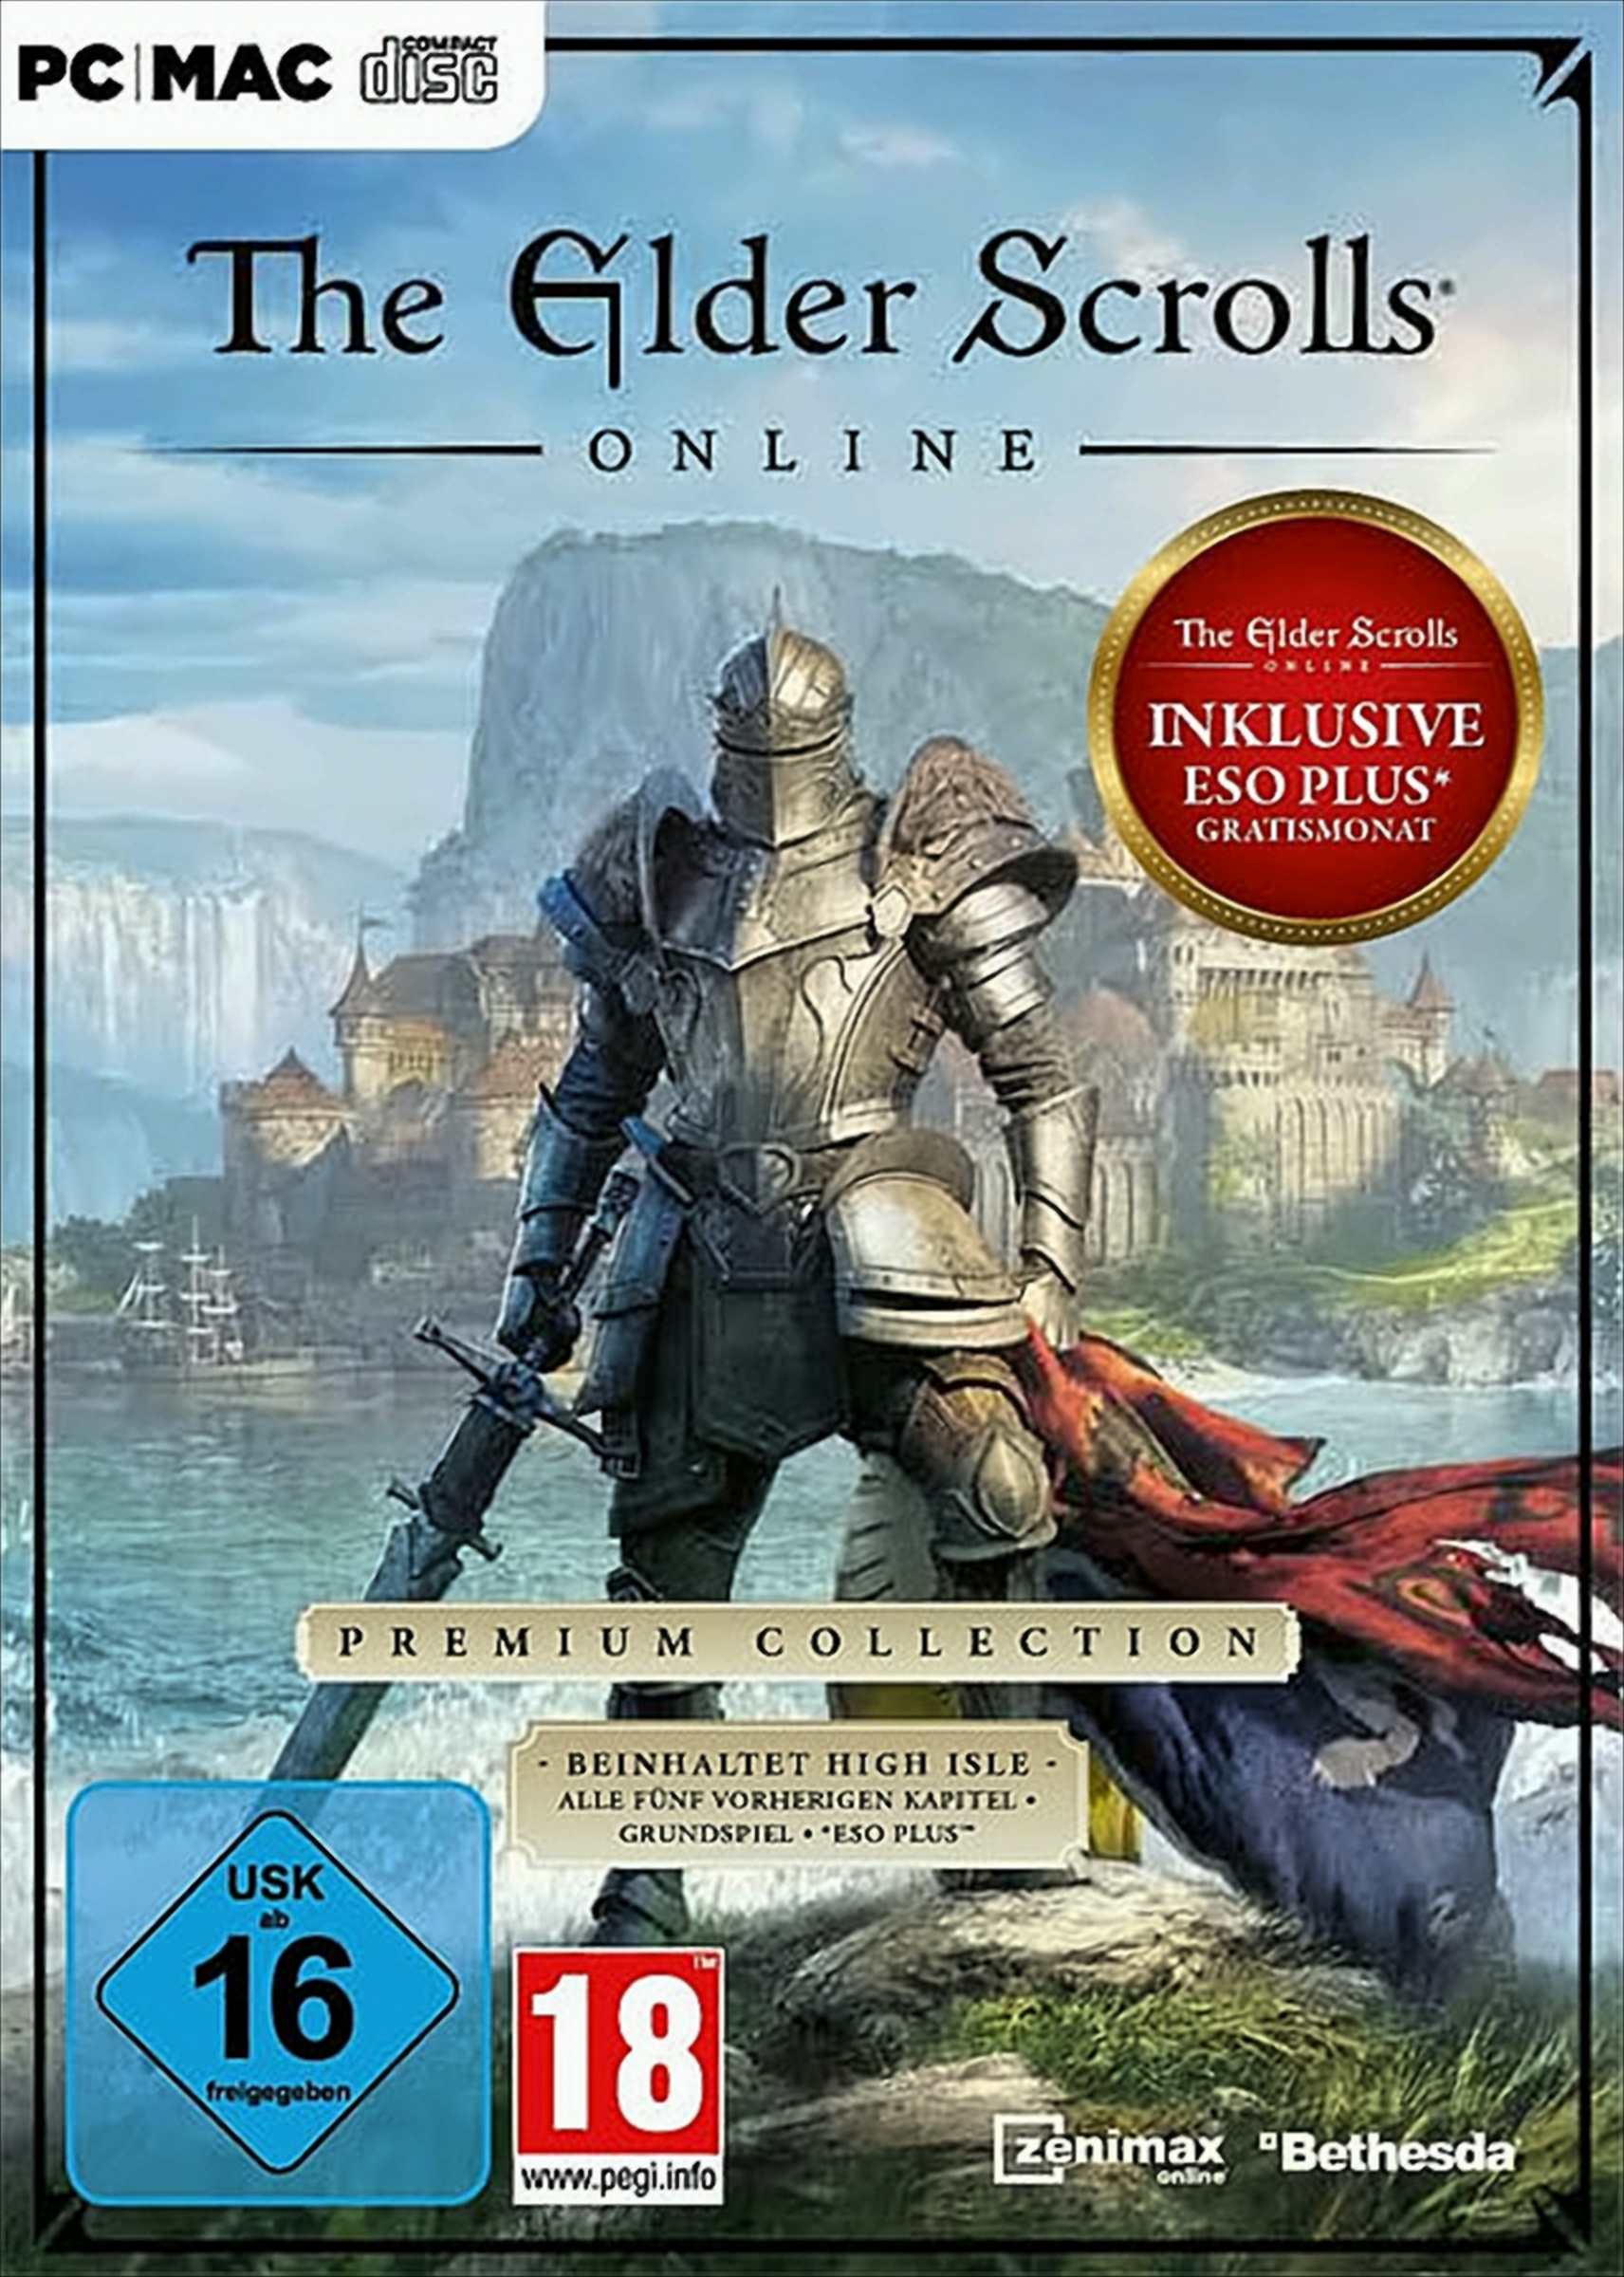 The Elder Scrolls Online: Premium Collection von Bethesda Softworks (ZeniMax)